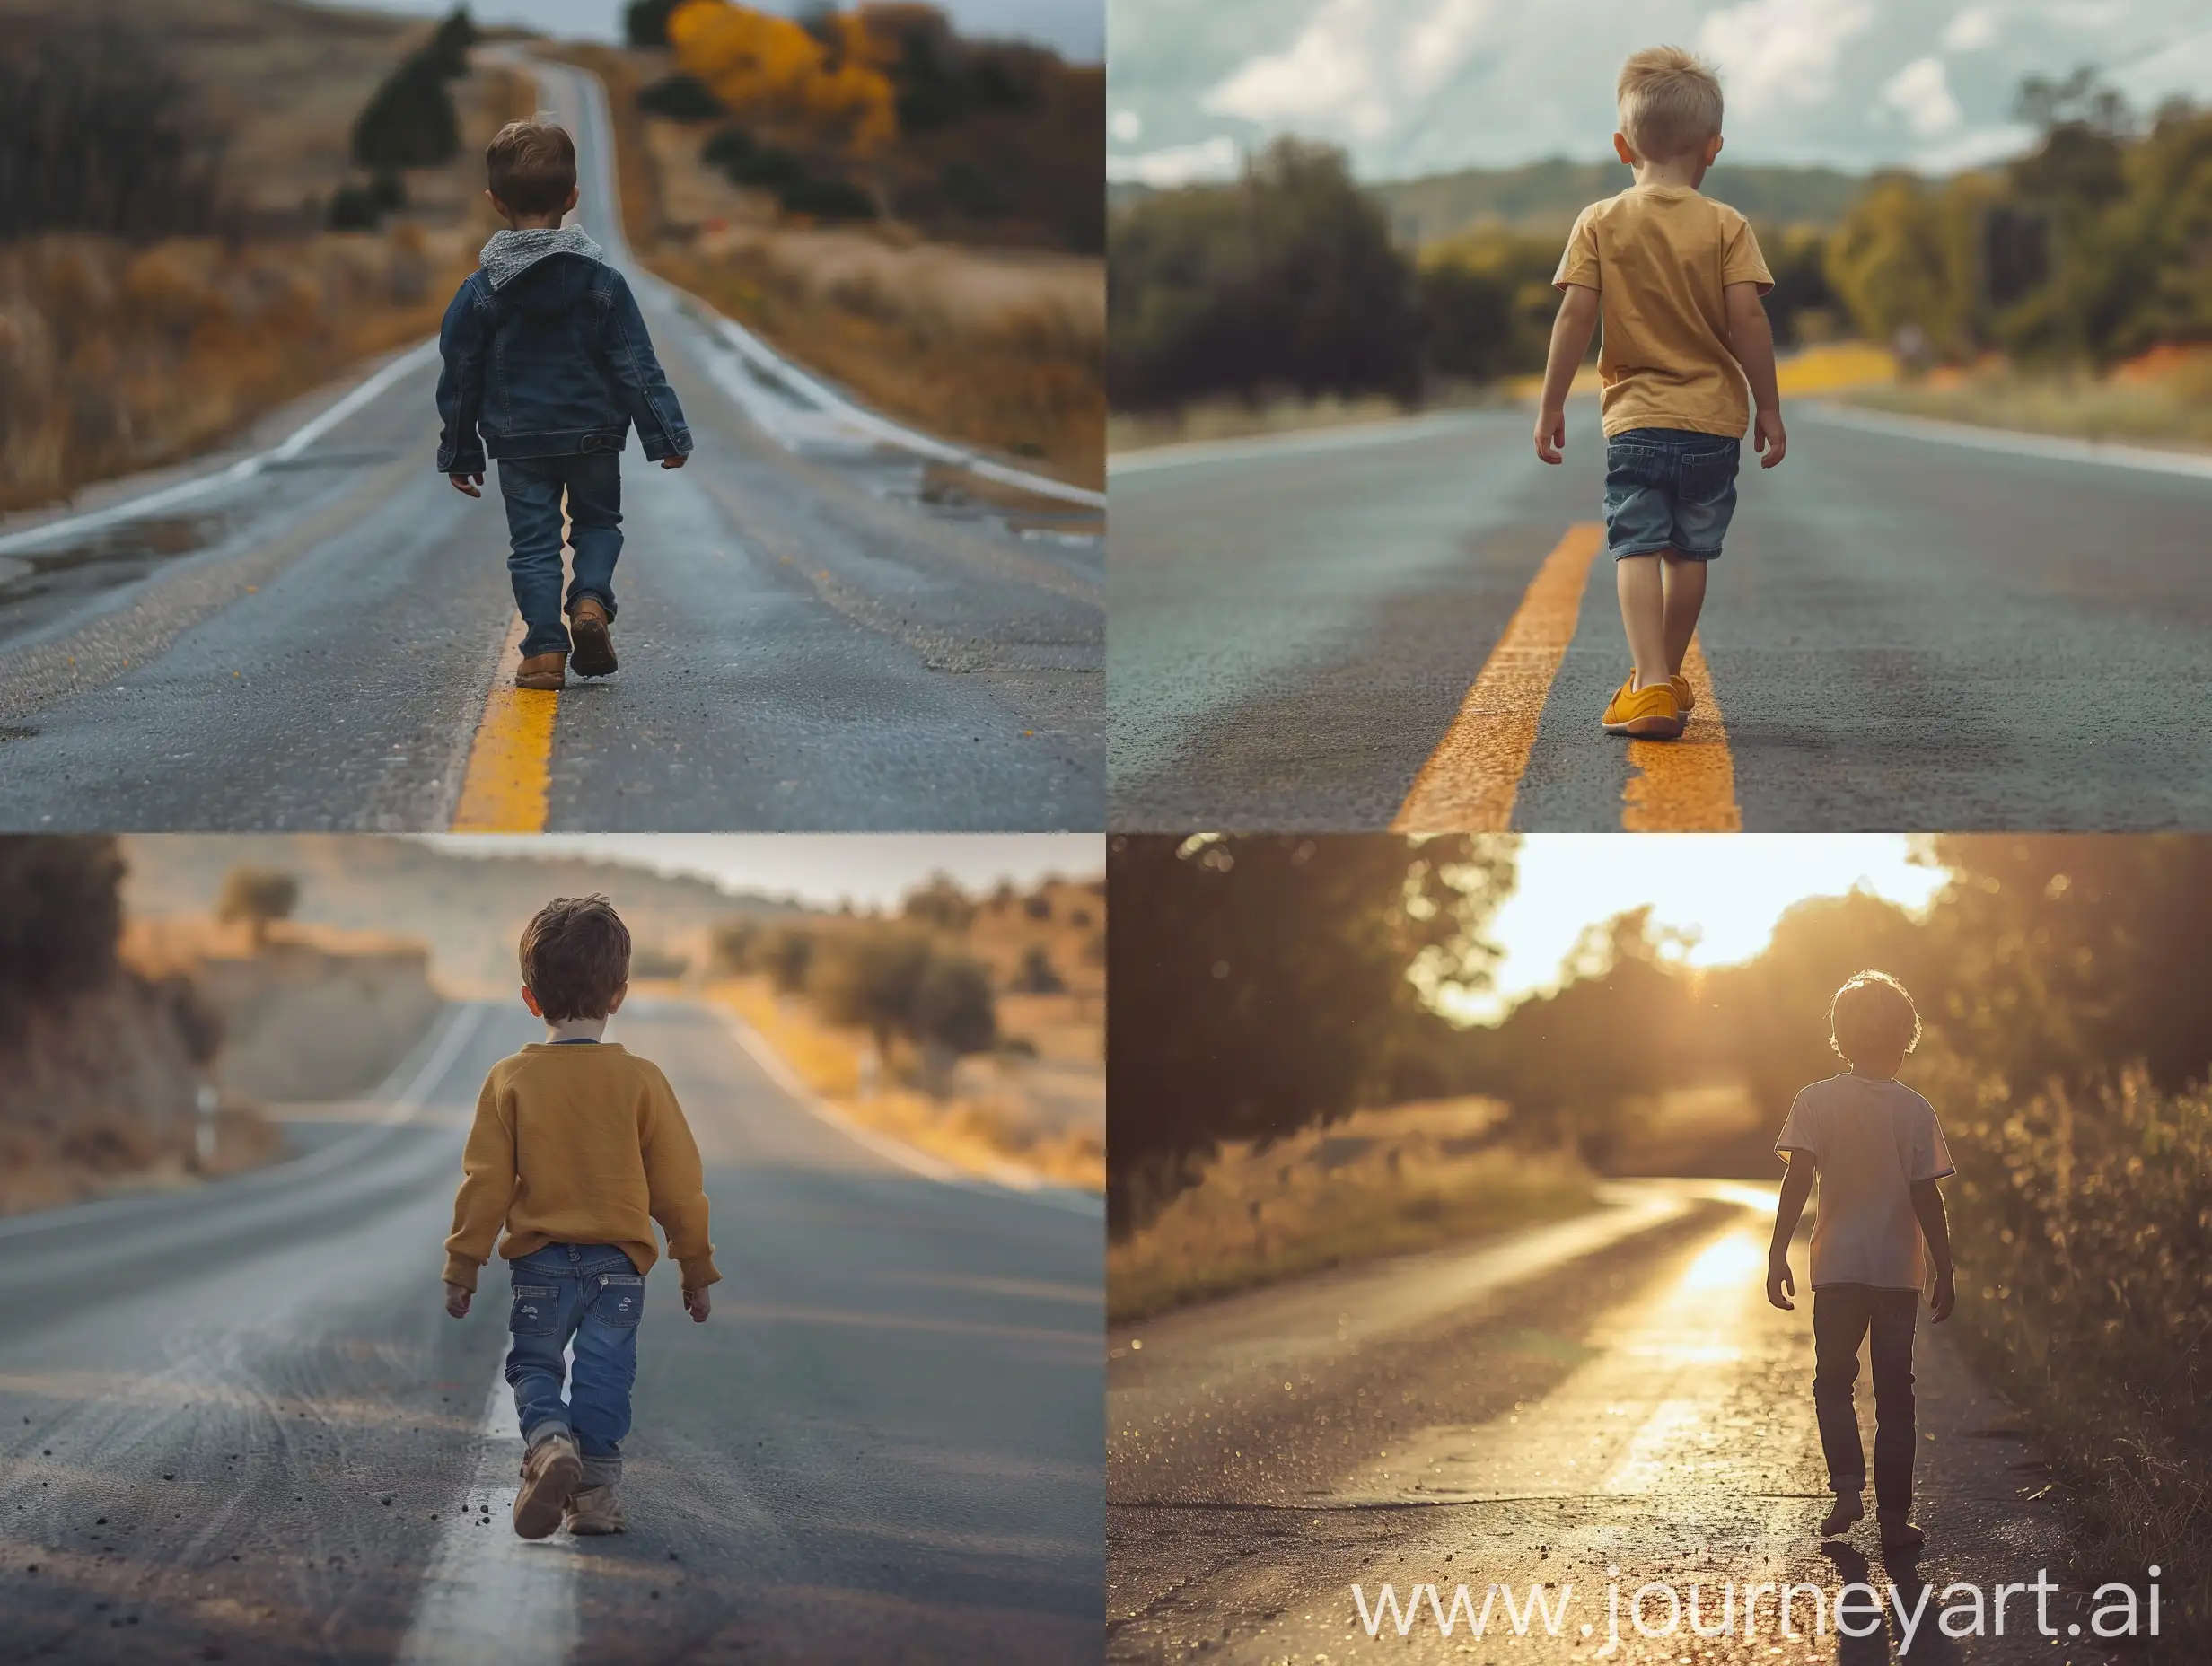 a boy walking on road